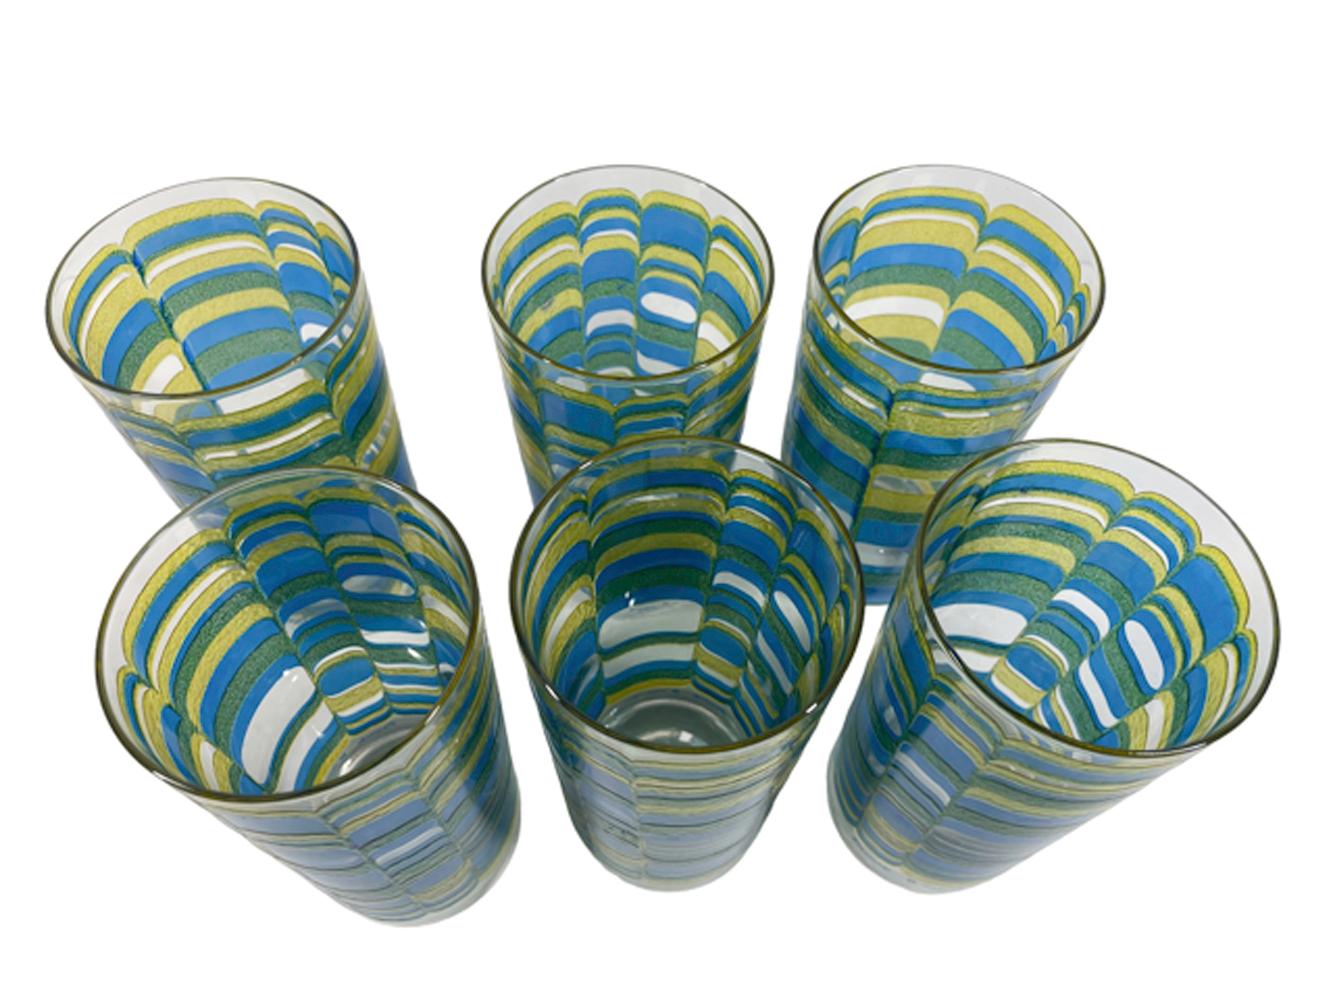 Sechs Highball-Gläser aus der Mitte des Jahrhunderts in einem gelben, blauen und grünen, erhabenen, strukturierten, geometrischen Design mit einer rutschfesten Oberfläche, entworfen von Irene Pasinski für die Washington Glass Company.